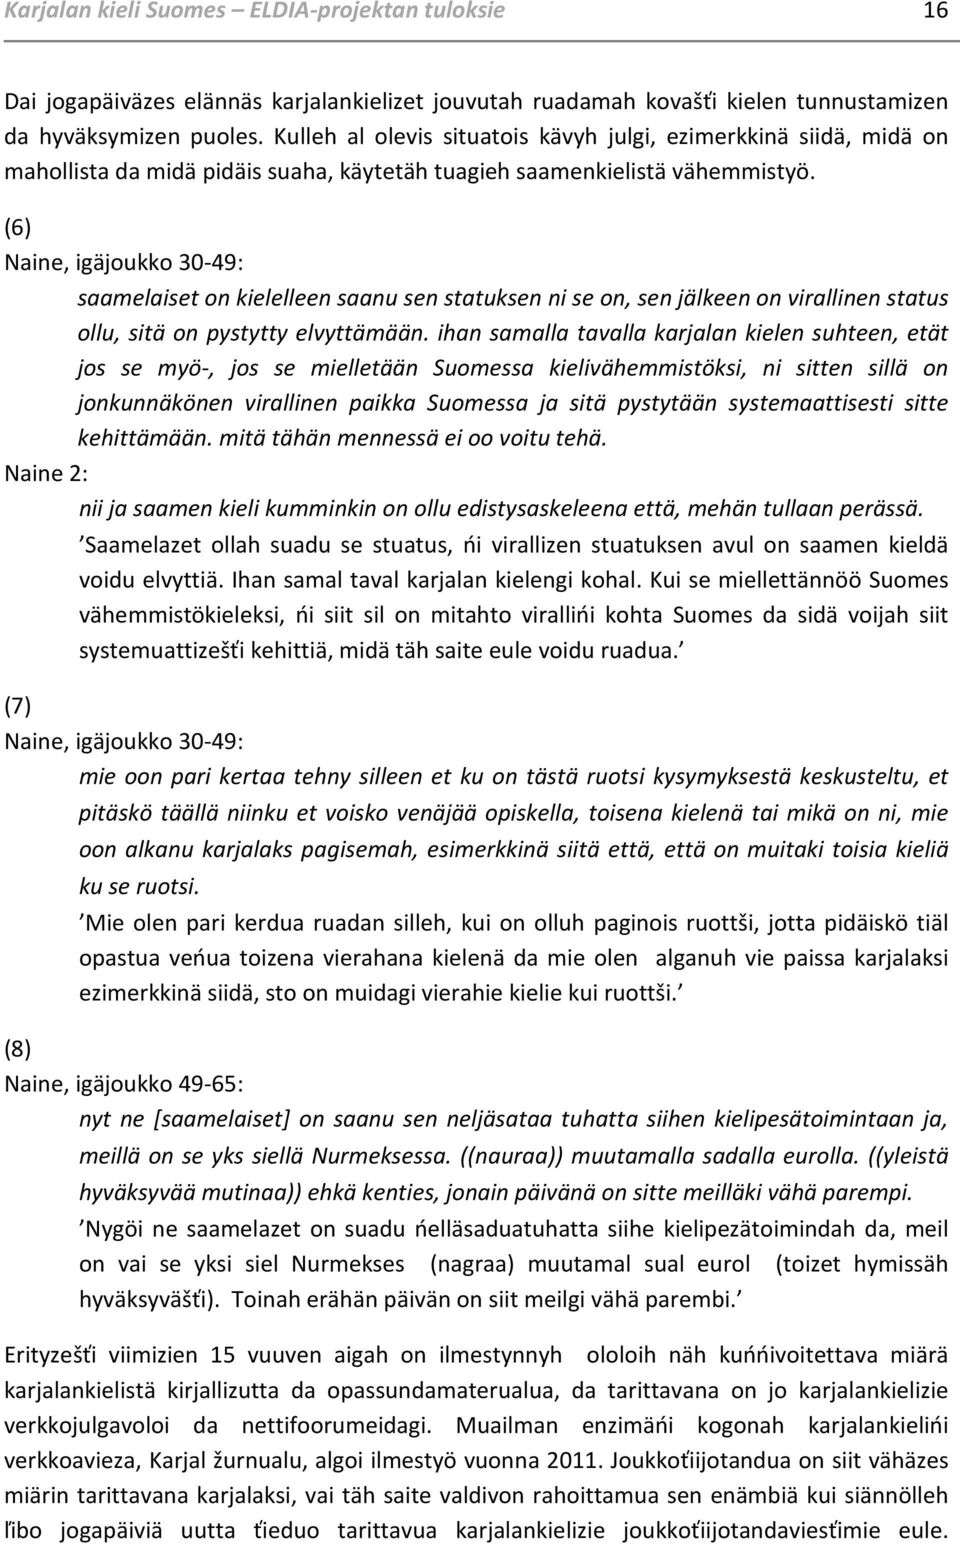 (6) Naine, igäjoukko 30-49: saamelaiset on kielelleen saanu sen statuksen ni se on, sen jälkeen on virallinen status ollu, sitä on pystytty elvyttämään.